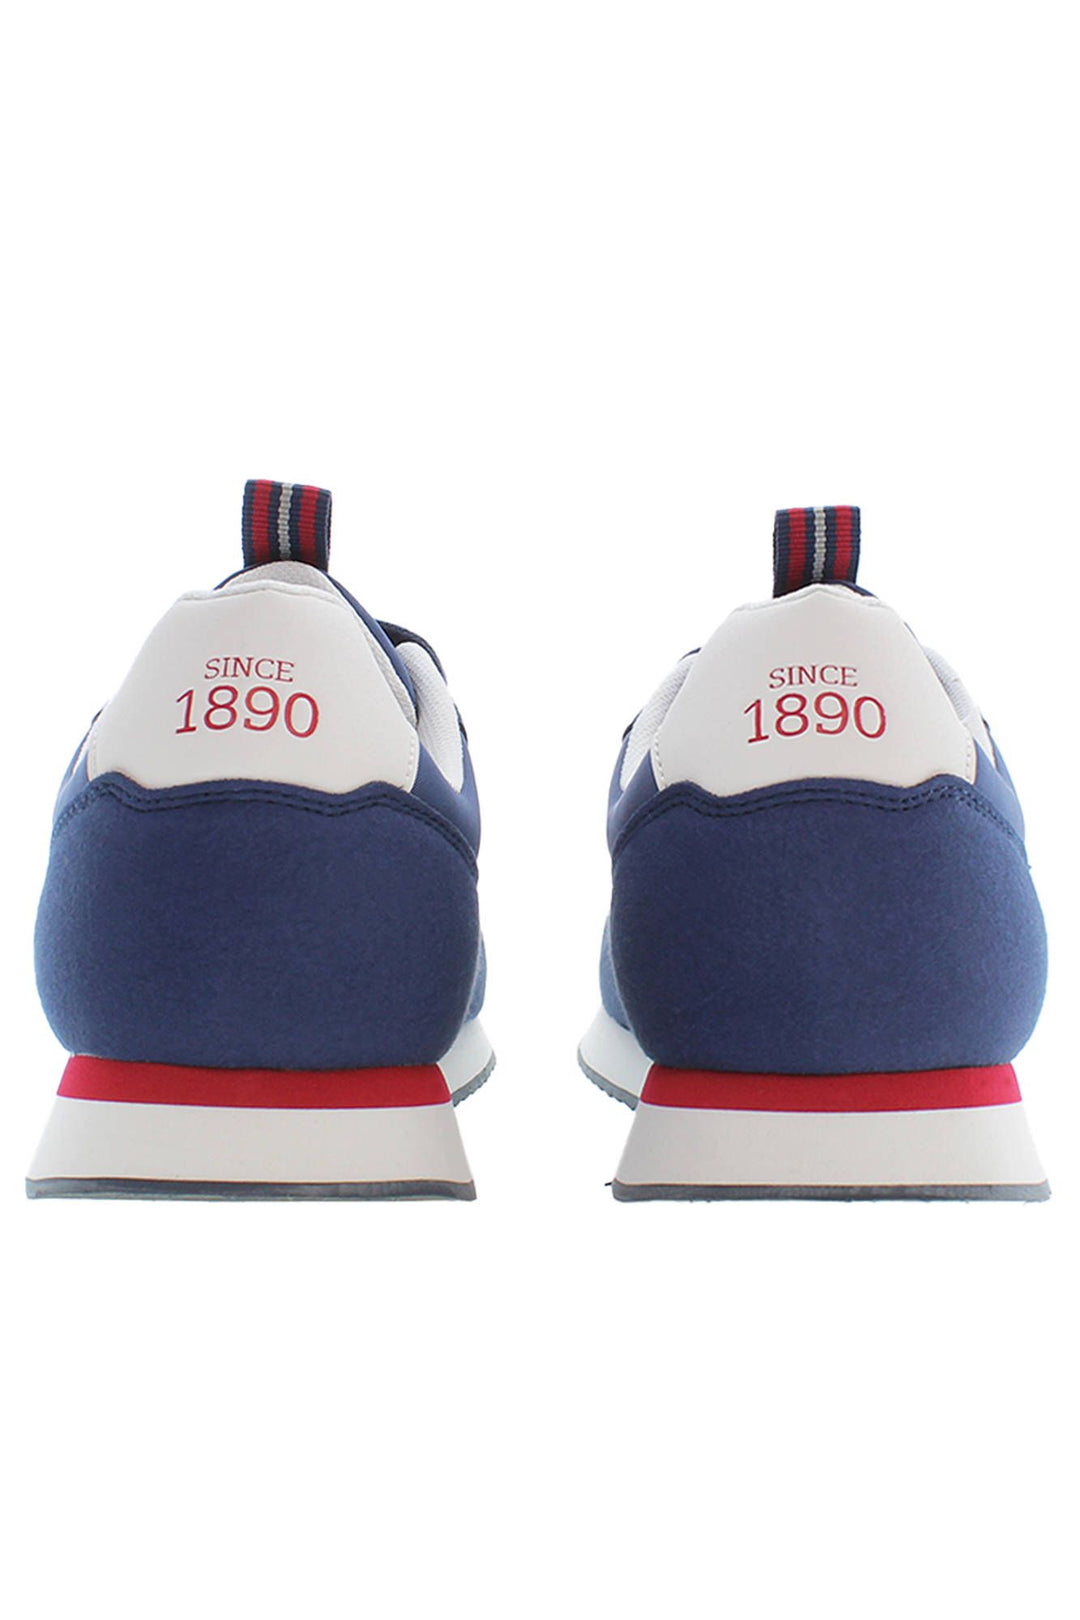 U.S. Polo Assn. Blue Polyester Sneaker